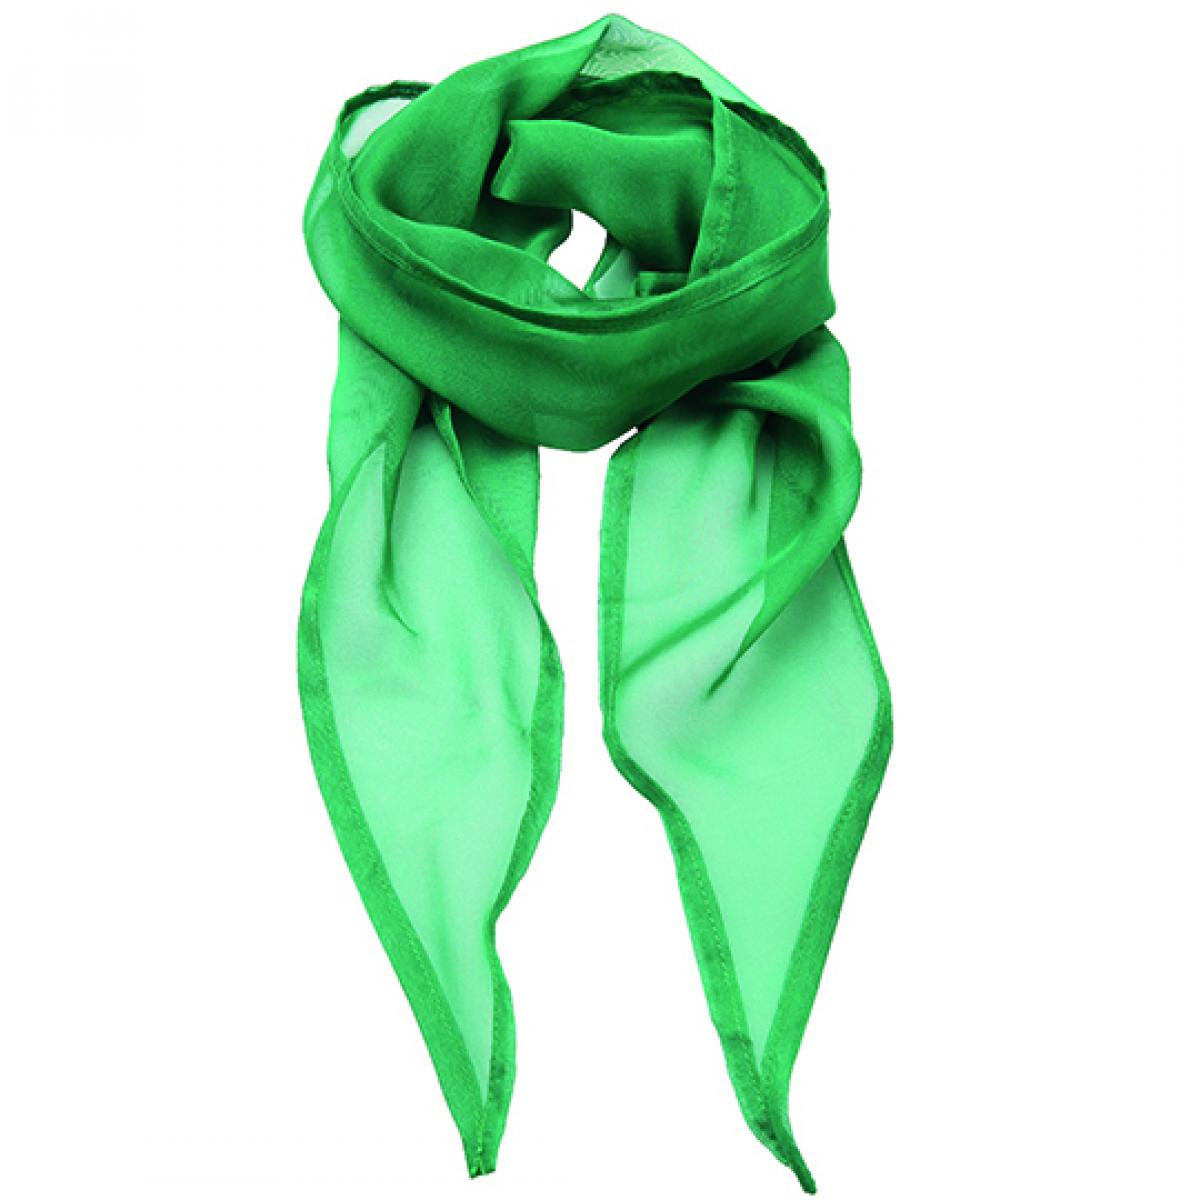 Hersteller: Premier Workwear Herstellernummer: PR740 Artikelbezeichnung: Schal Women`s Colour Chiffon Scarf - 98 x 16,5 cm Farbe: Emerald (ca. Pantone 341)